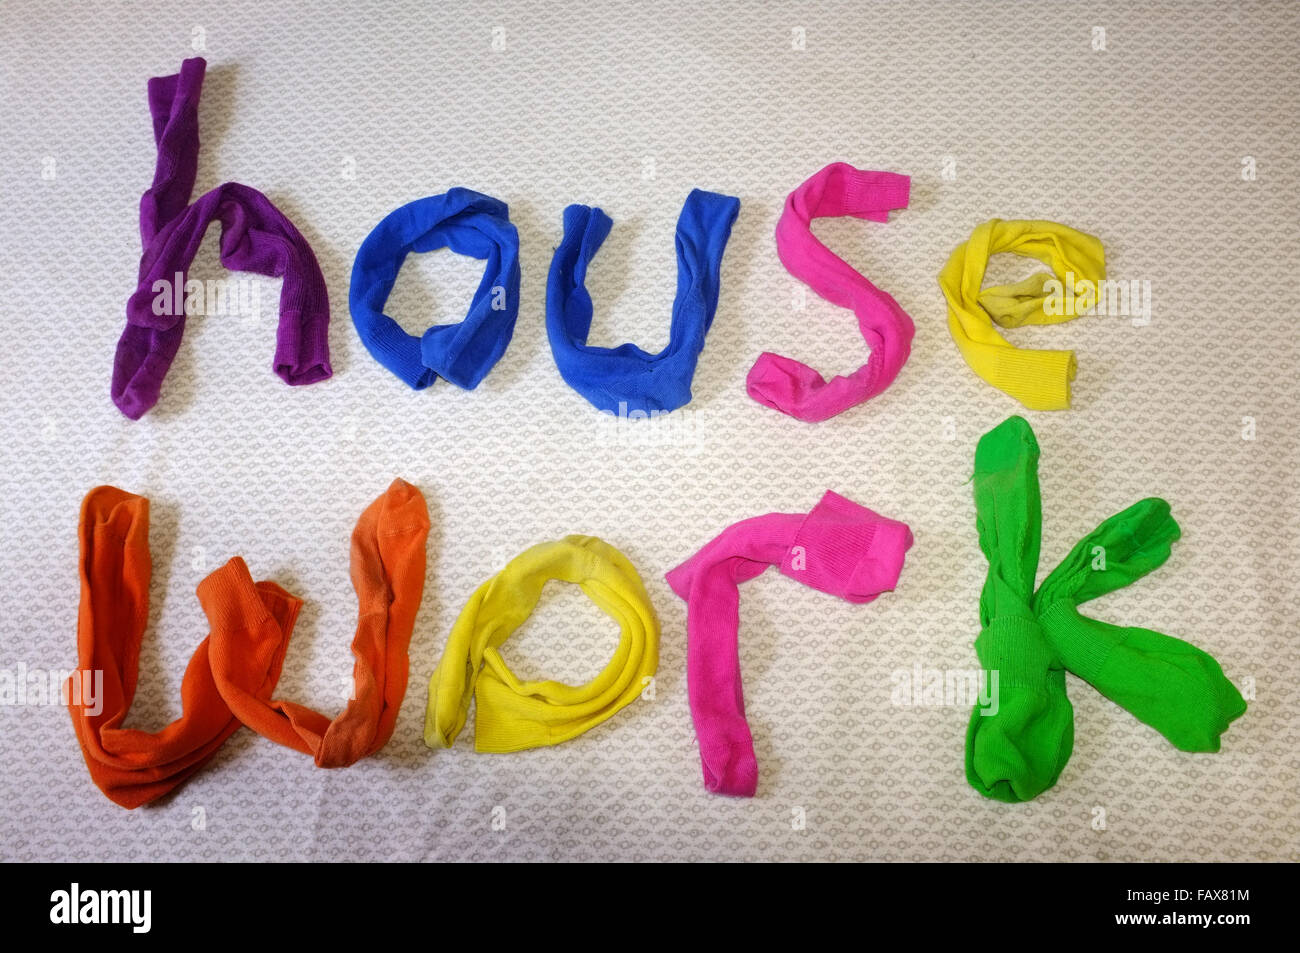 Les mots travail maison faite de chaussettes colorées portant sur une couette. Banque D'Images